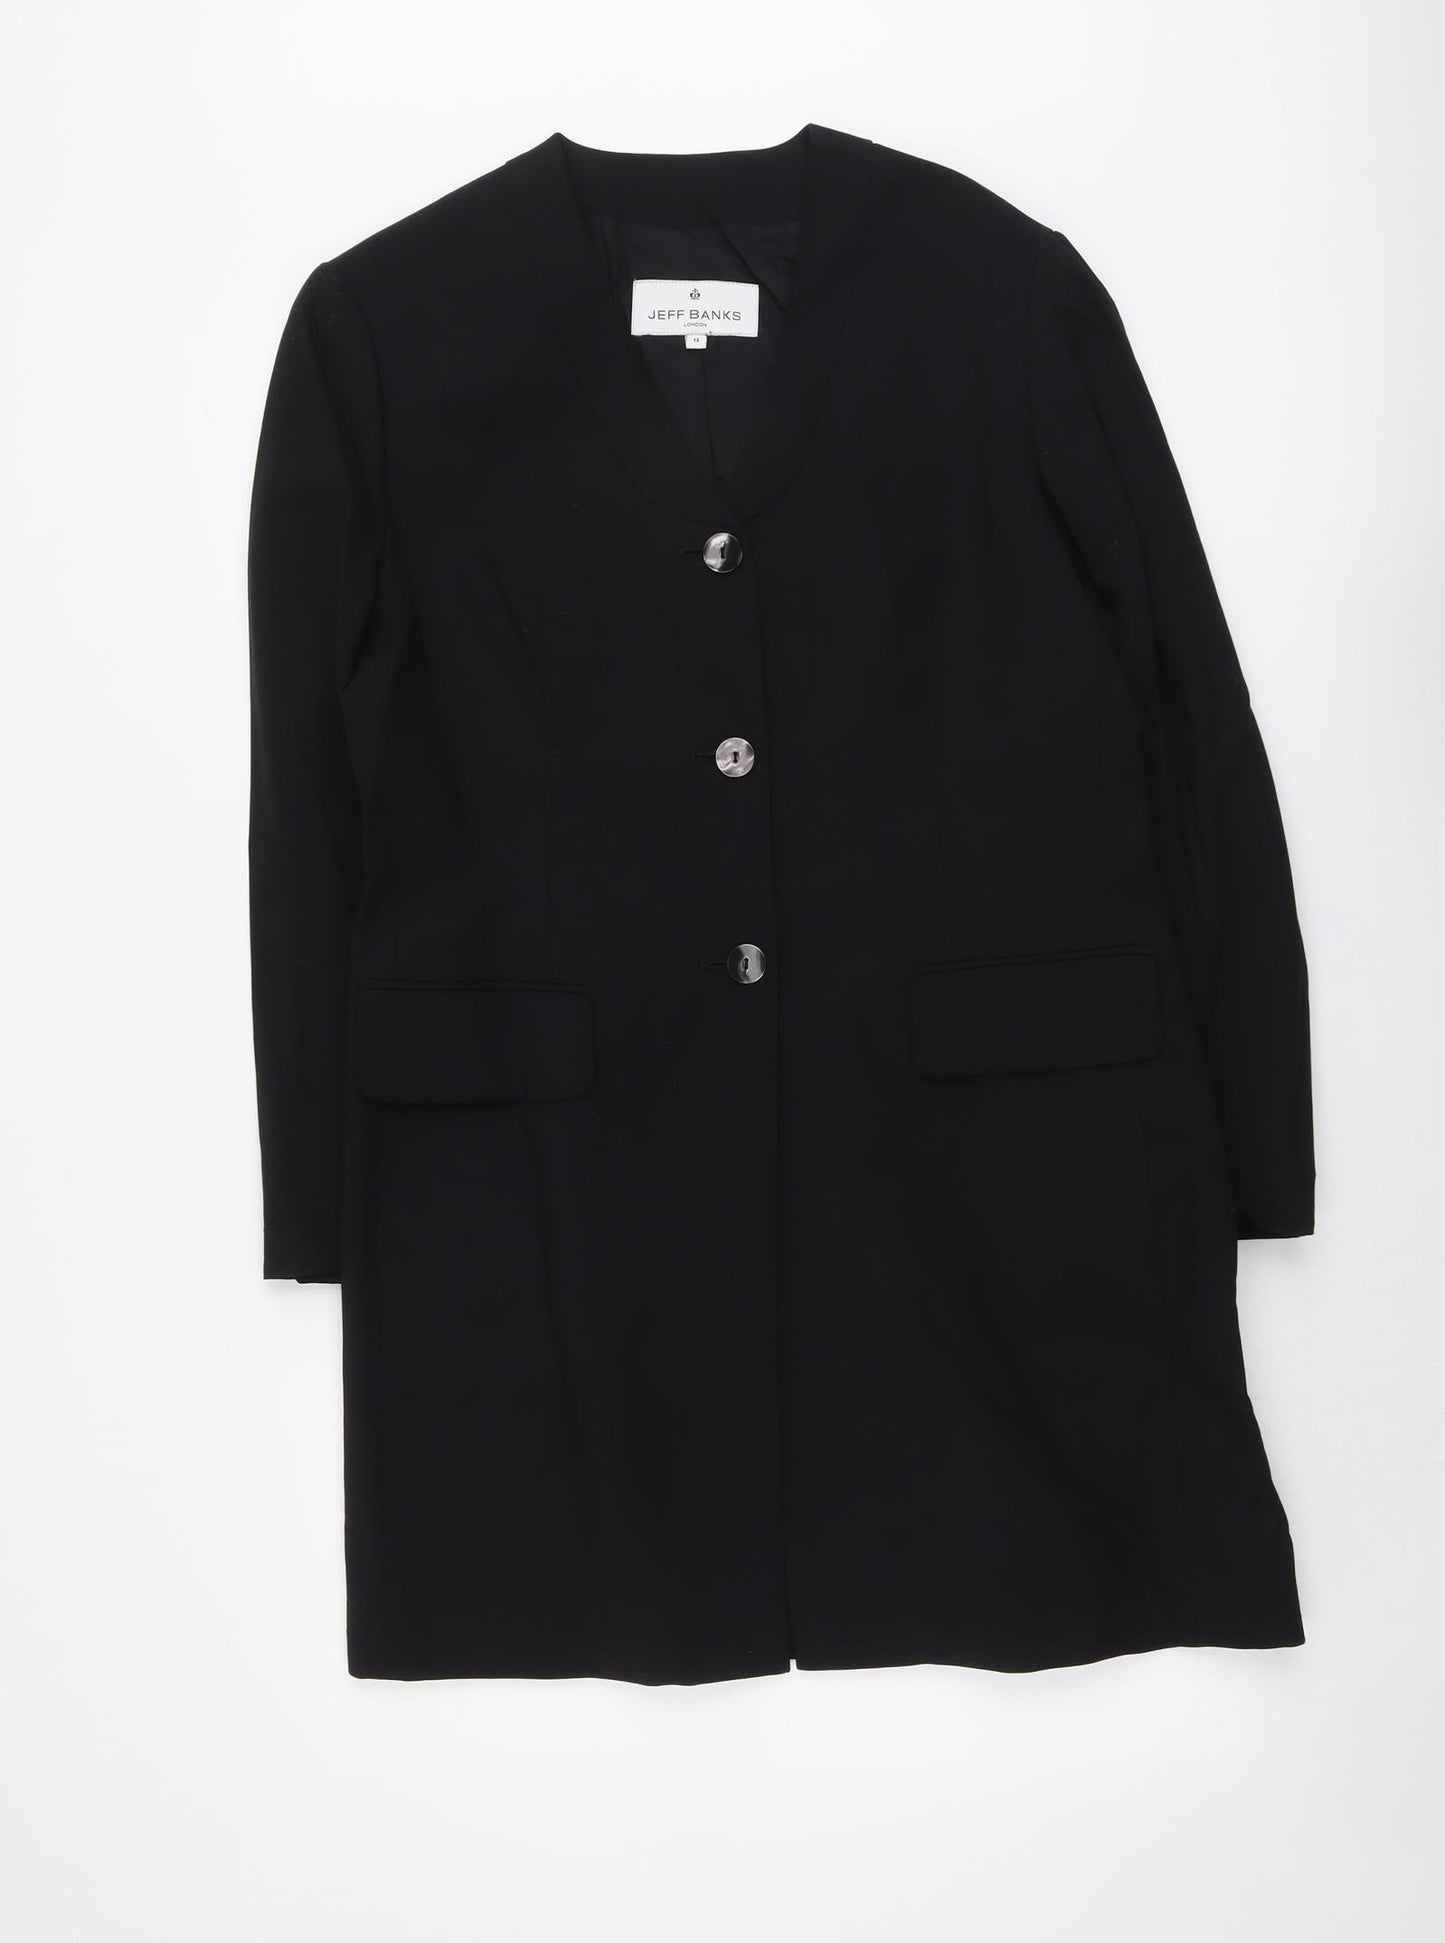 Jeff Banks Womens Beige Overcoat Coat Size 12 Button